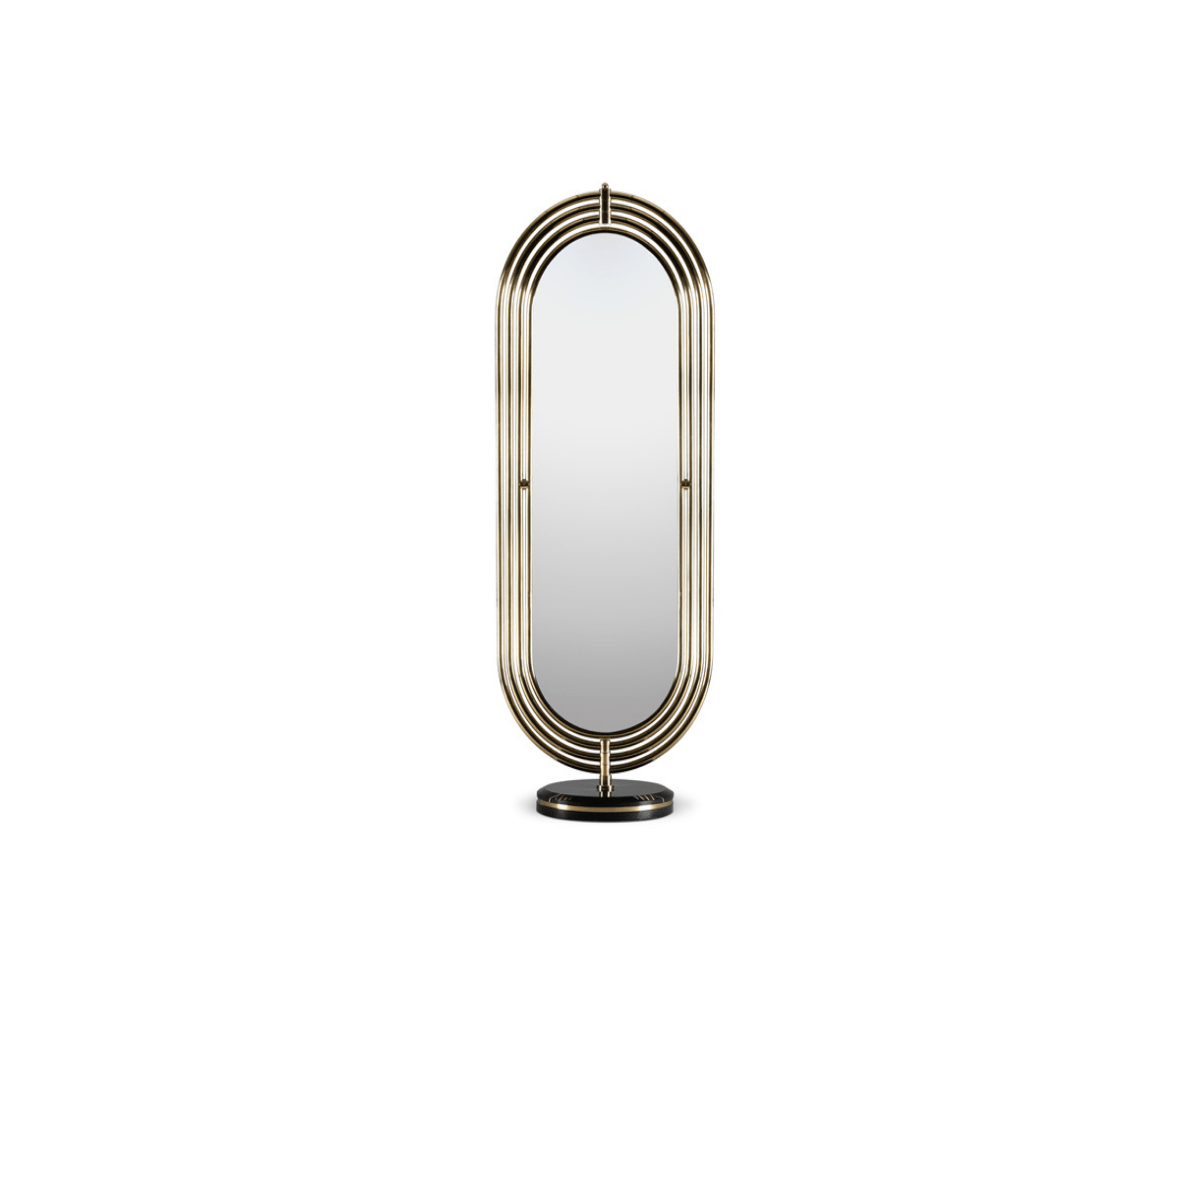 colosseum floor mirror maison valentina 001 Equator Gold Globe Bar